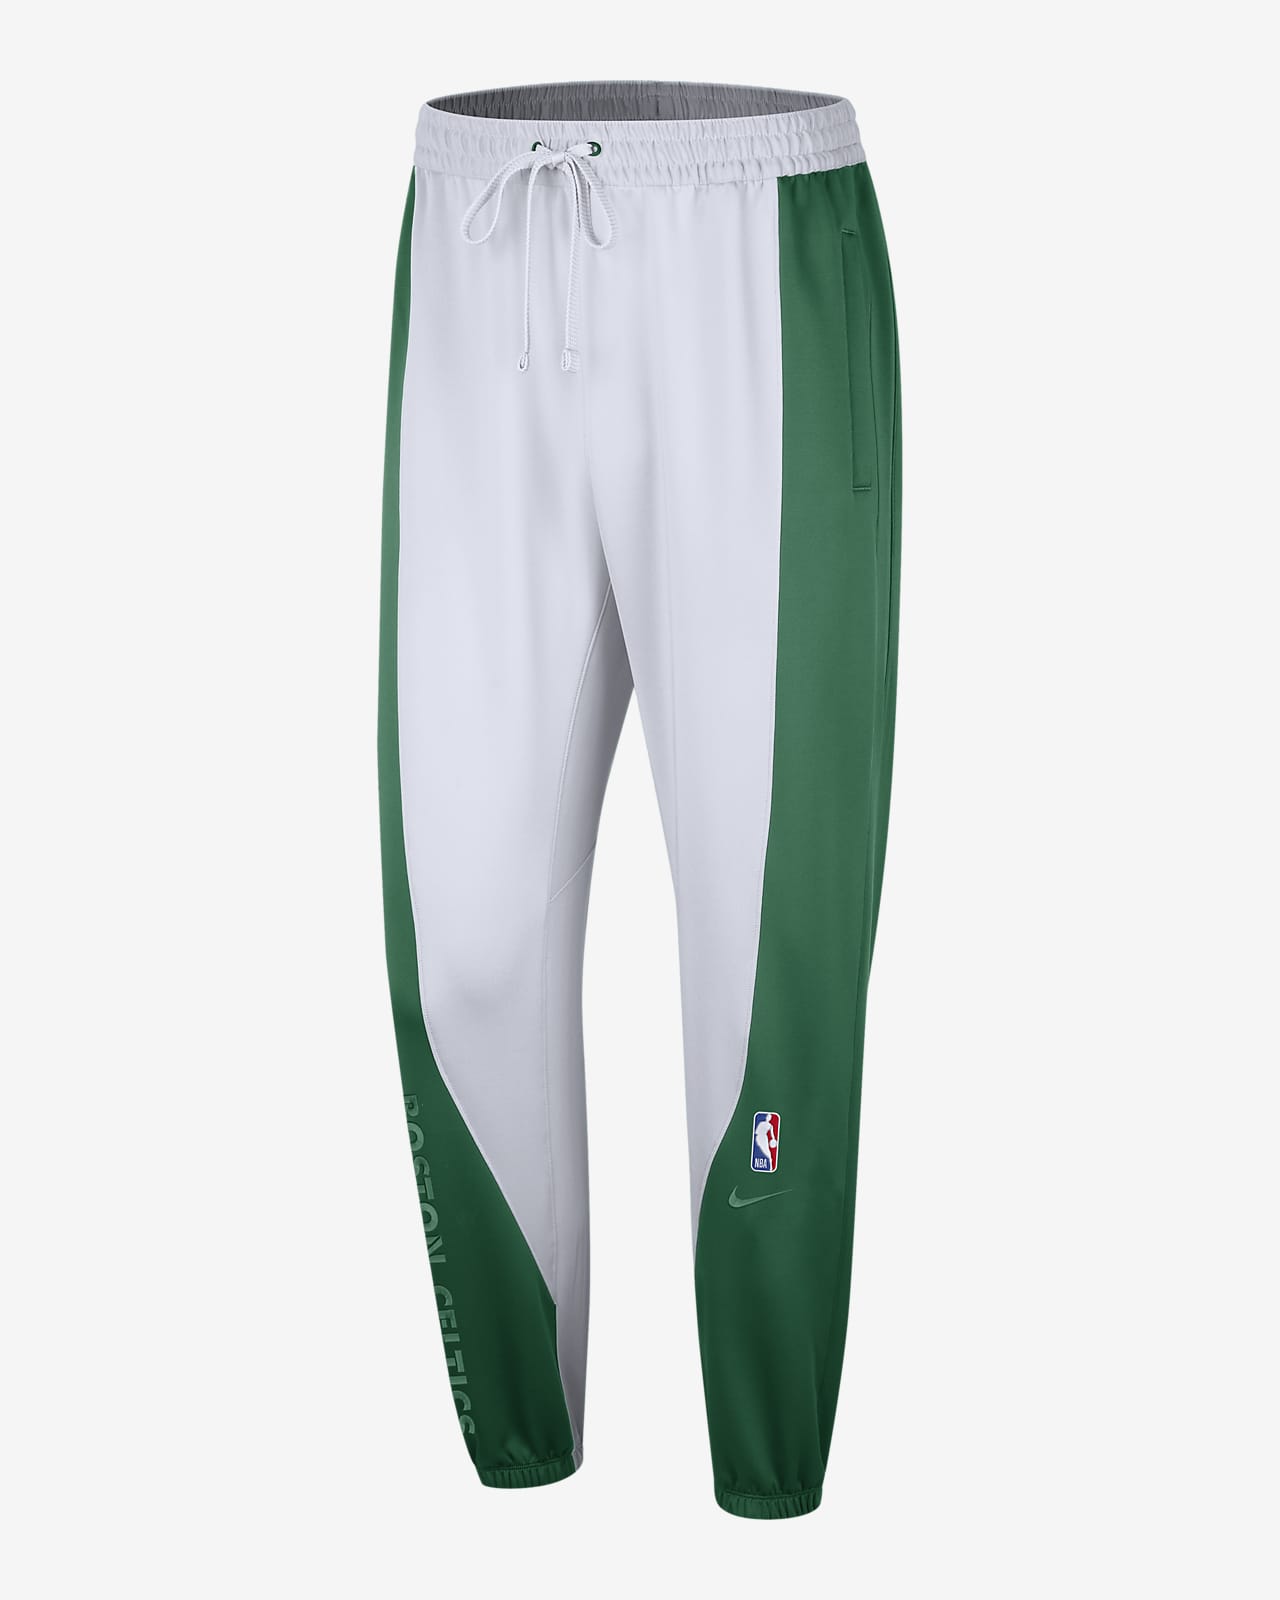 Boston Celtics Showtime Men's Nike Dri-FIT NBA Trousers